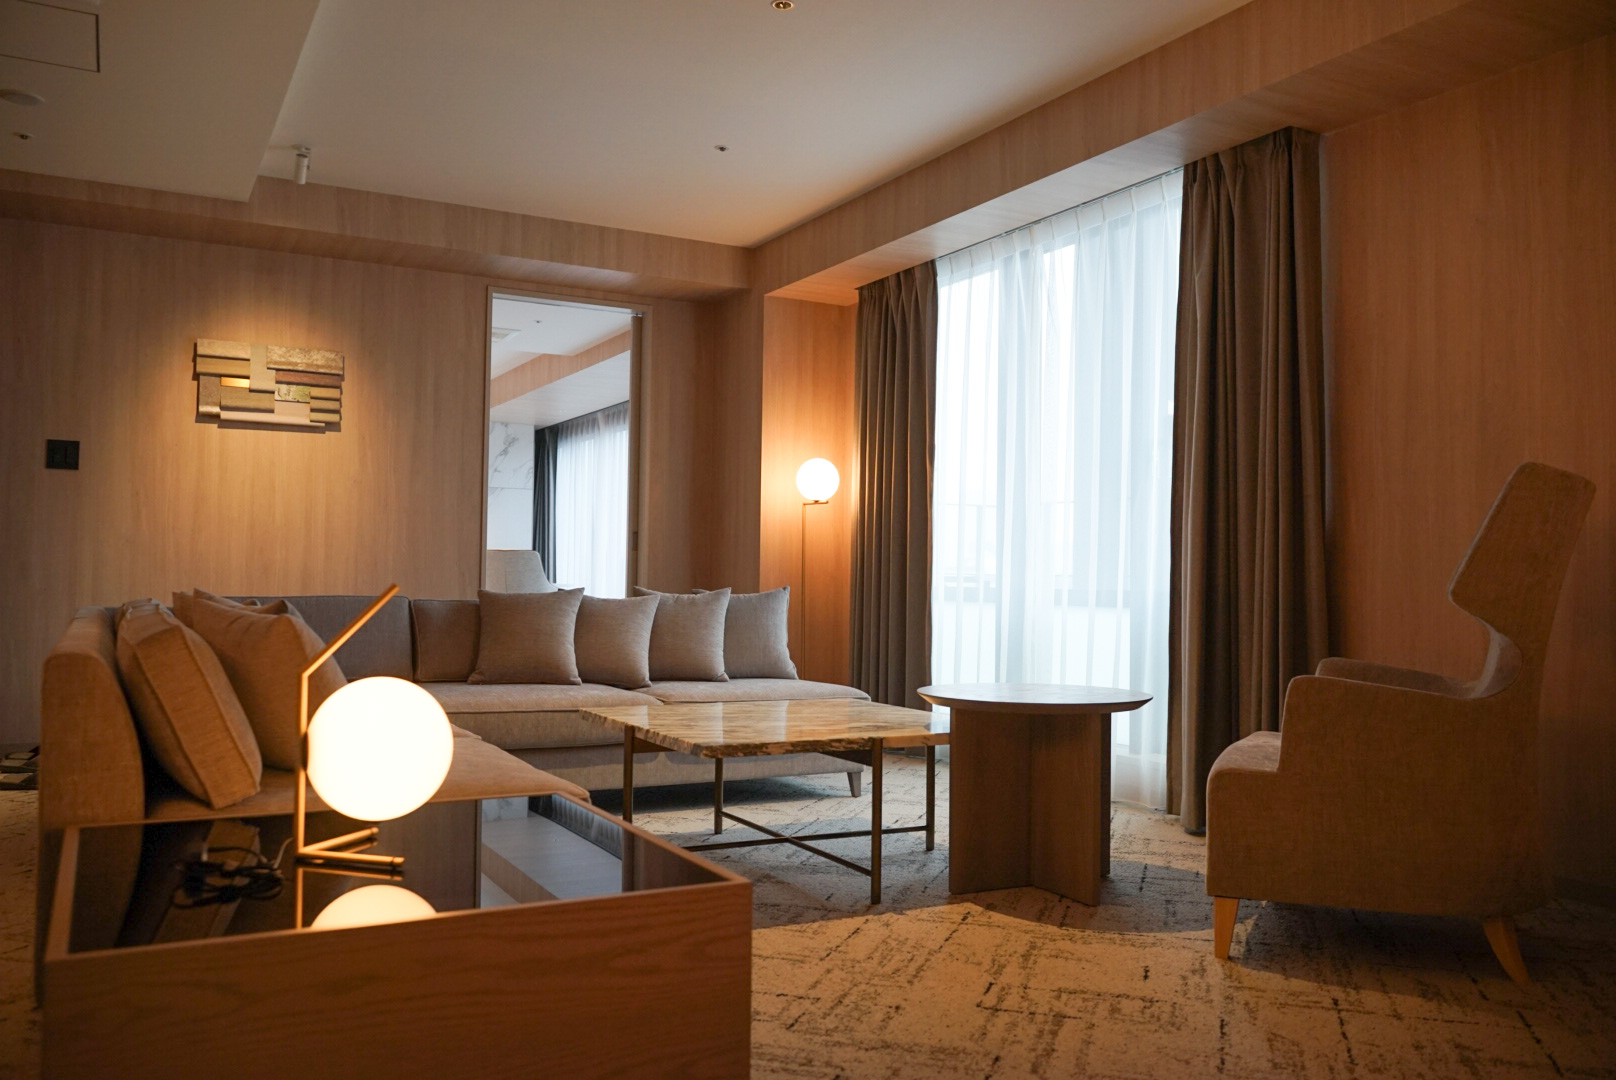 暮らすように泊まる。大阪・南船場〈HOTEL THE LEBEN OSAKA〉での贅沢な日常のくつろぎ。